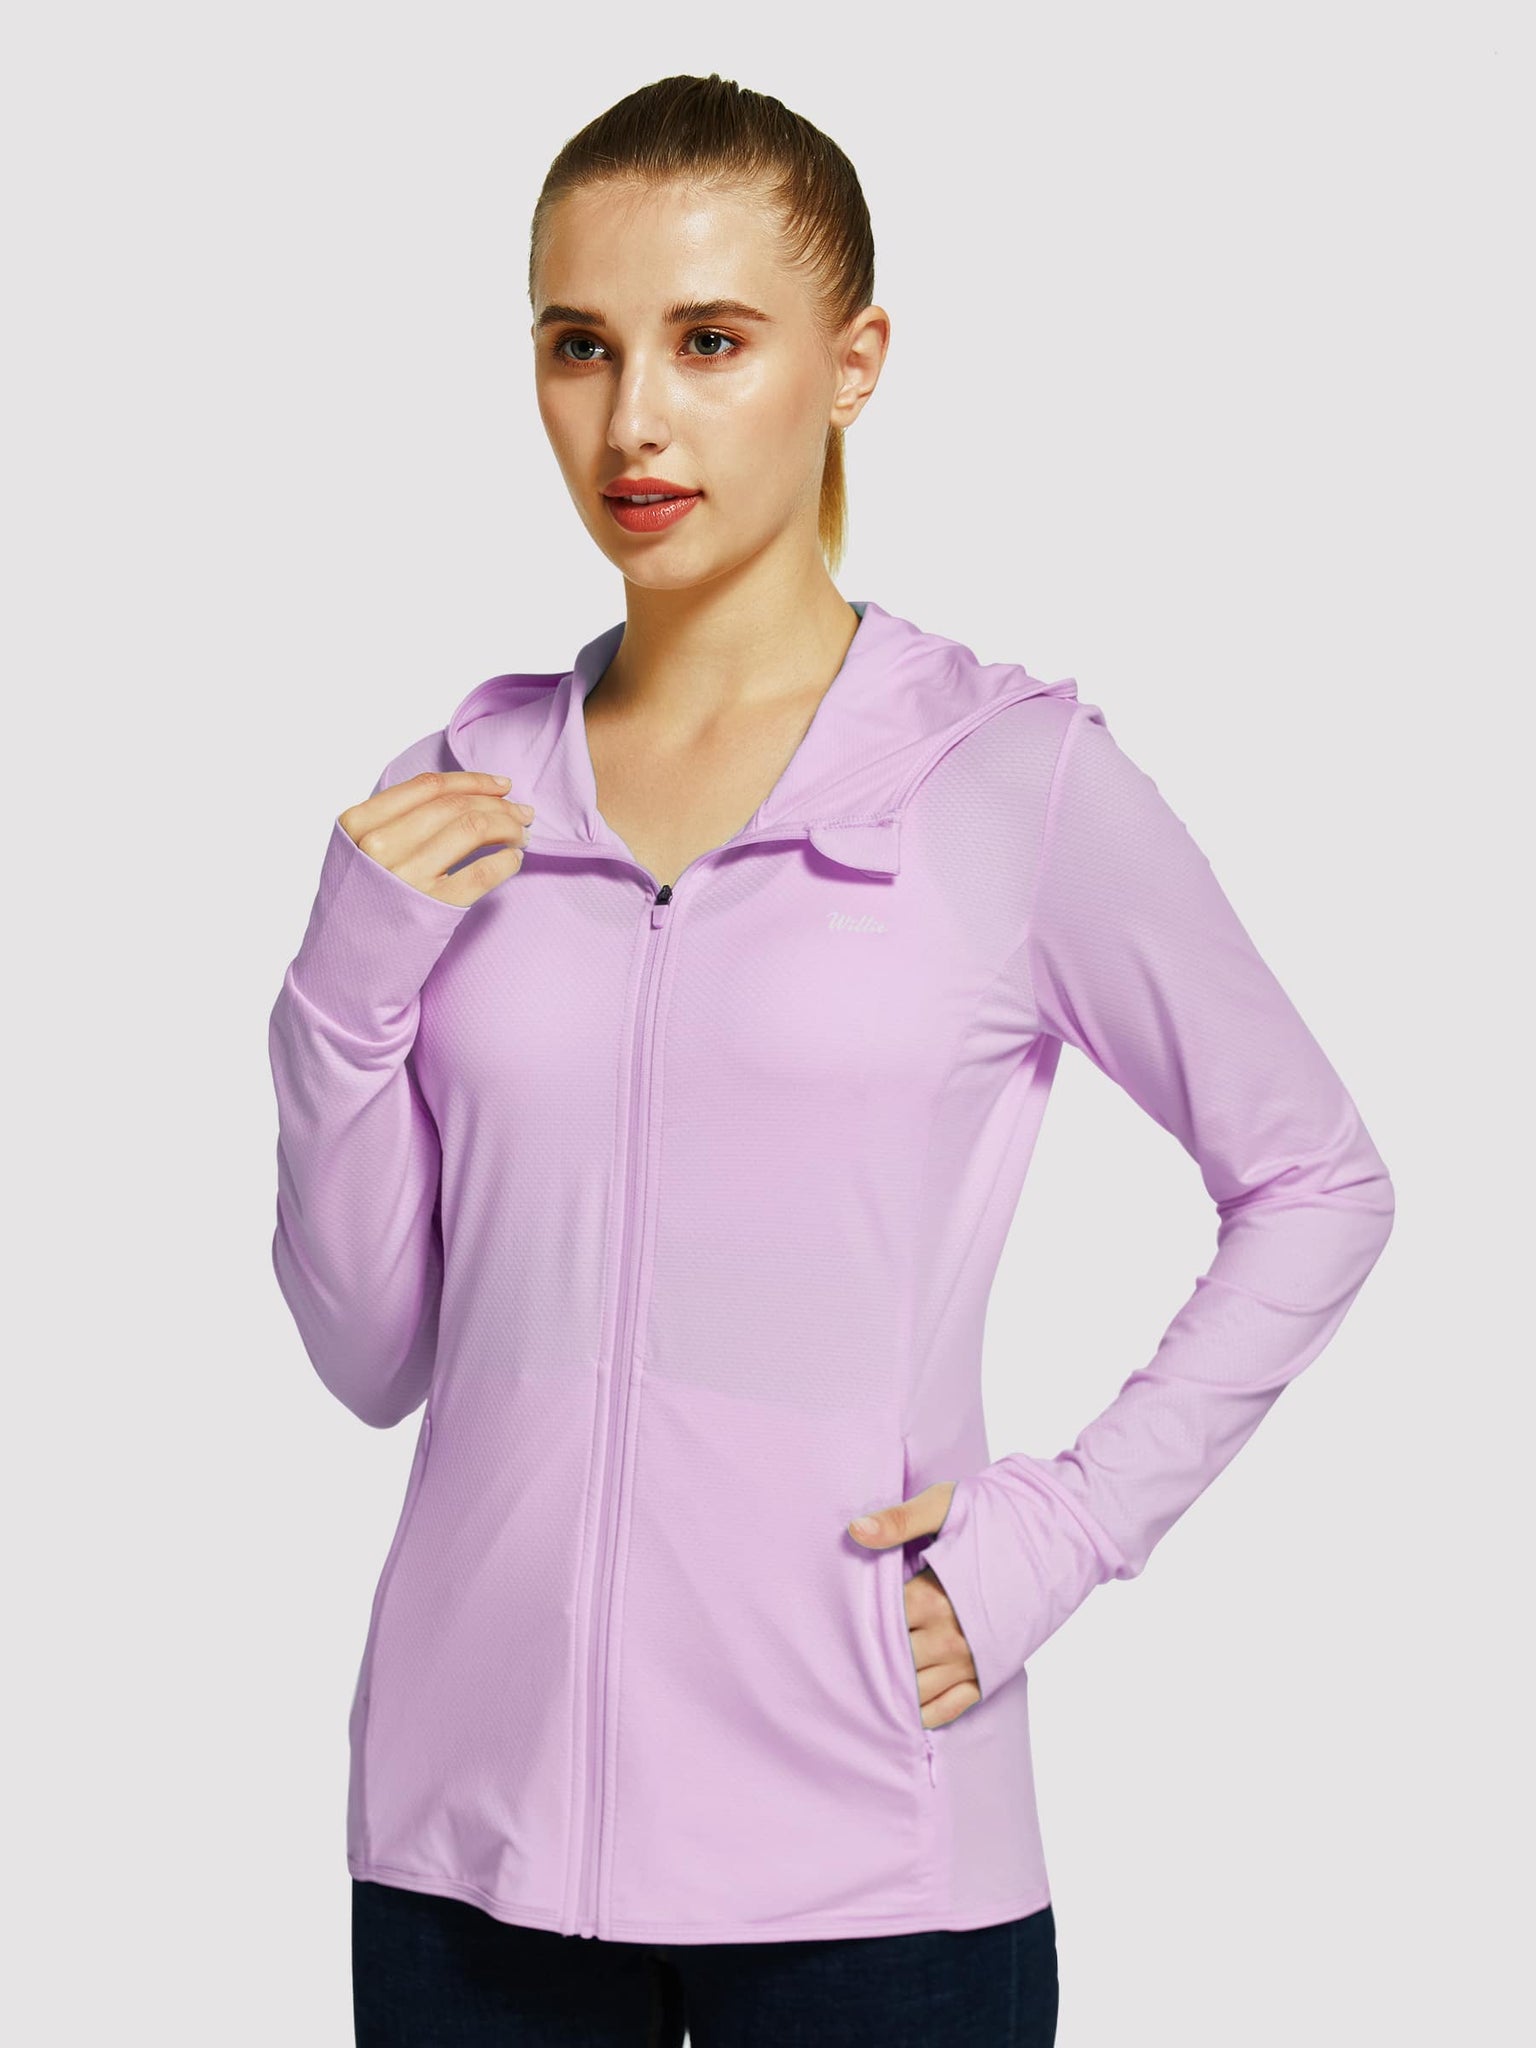 Willit Women's Outdoor Sun Protection Jacket Full Zip_Purple_model4